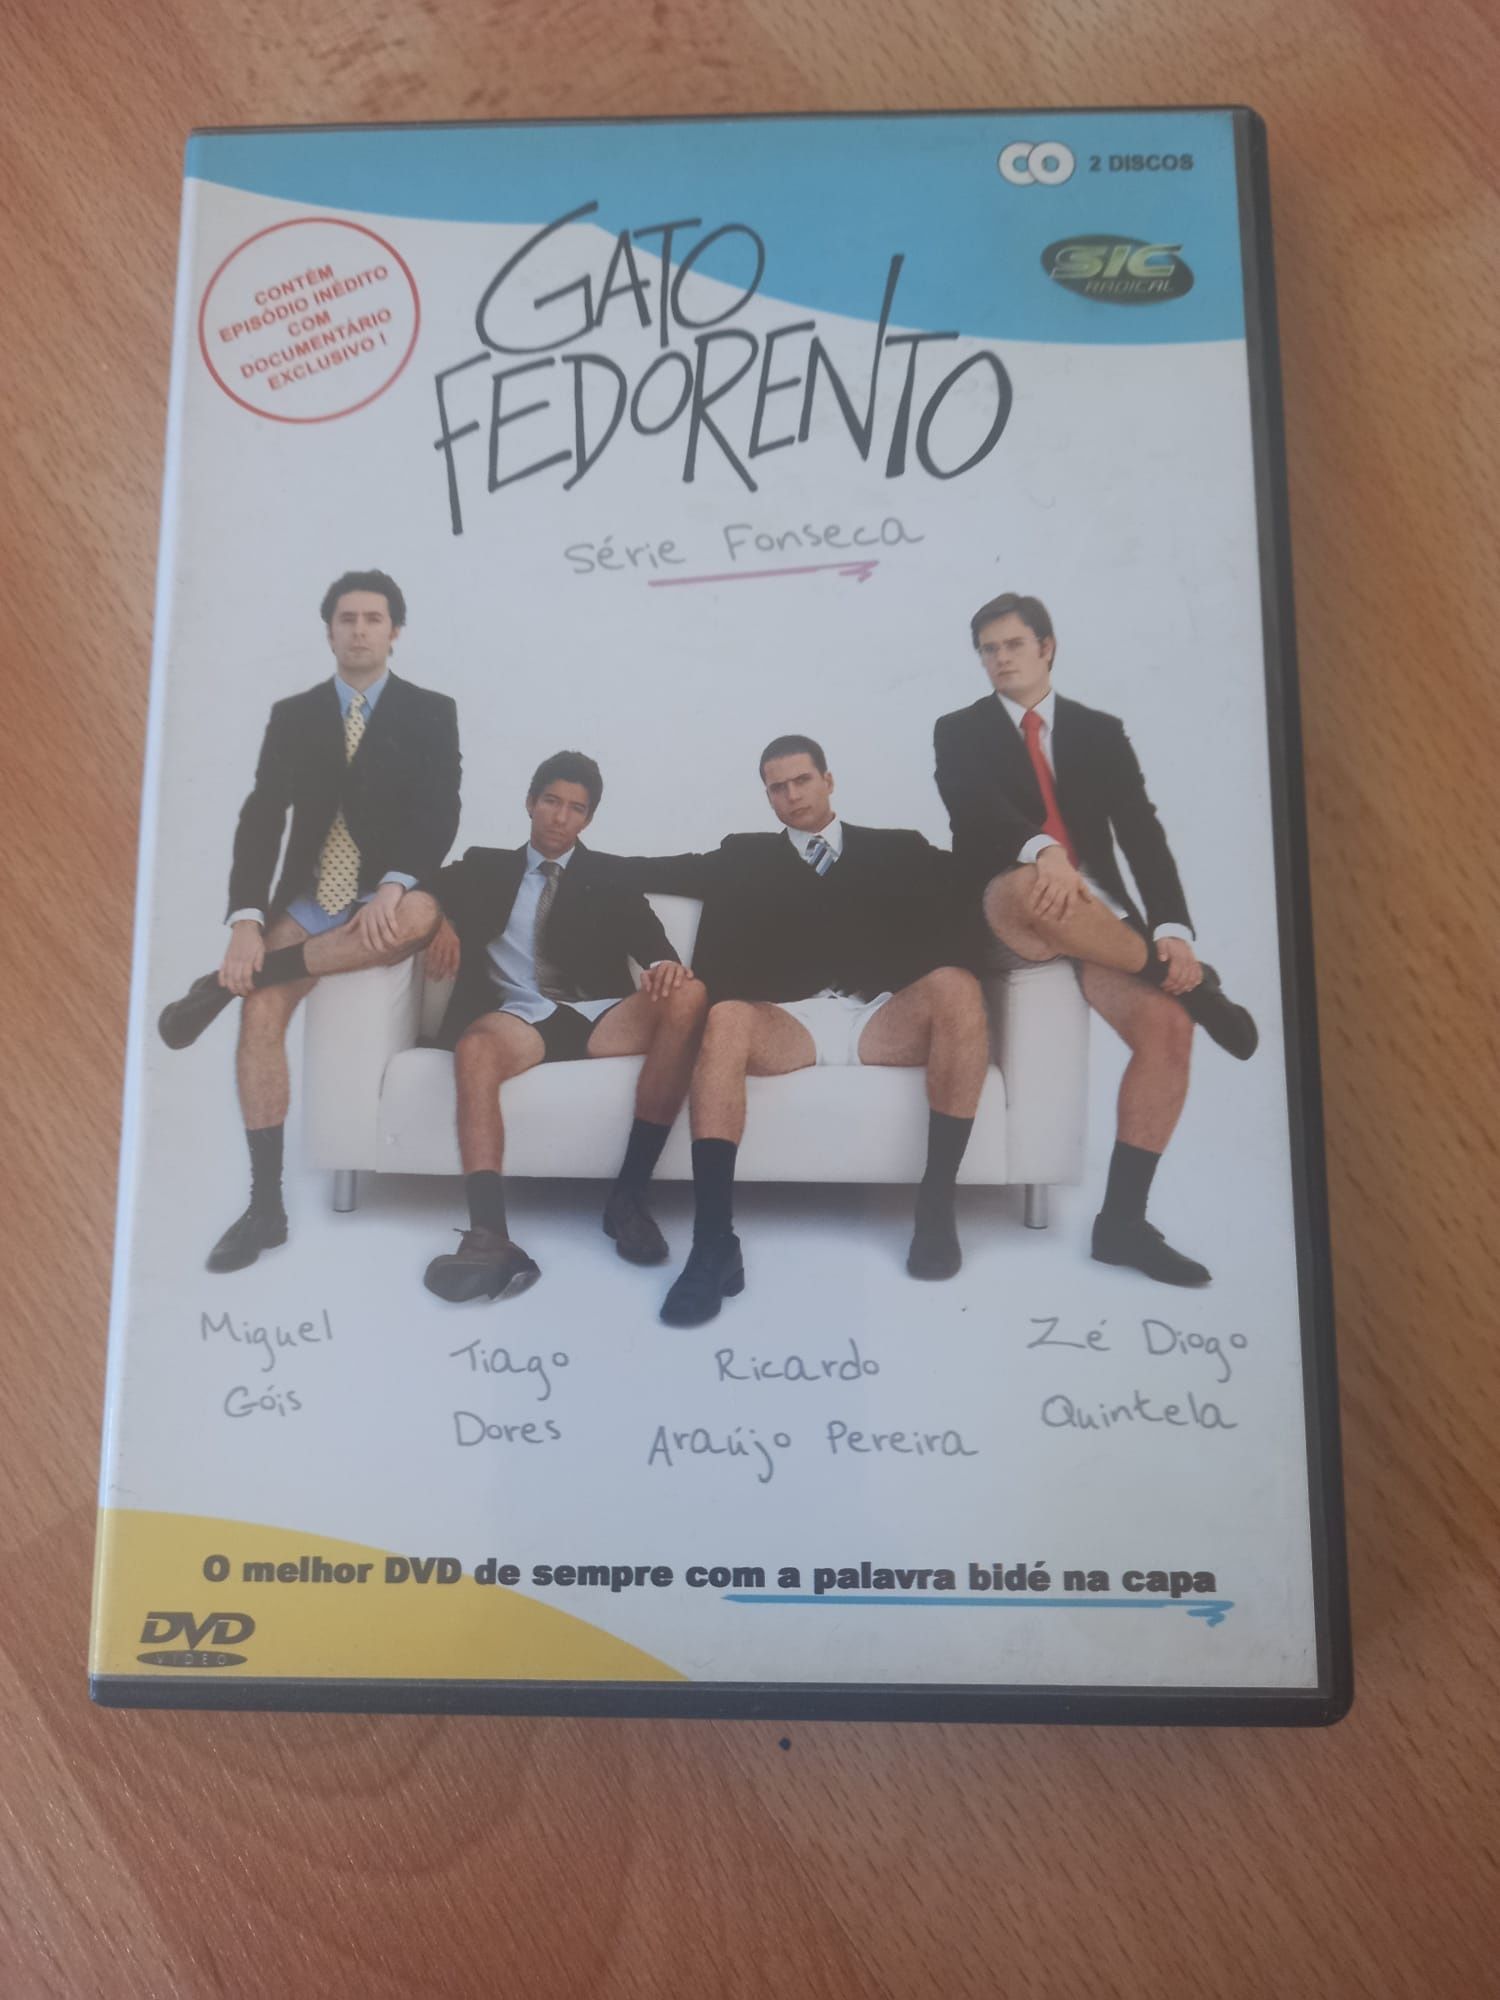 DVD duplo Gato Fedorento